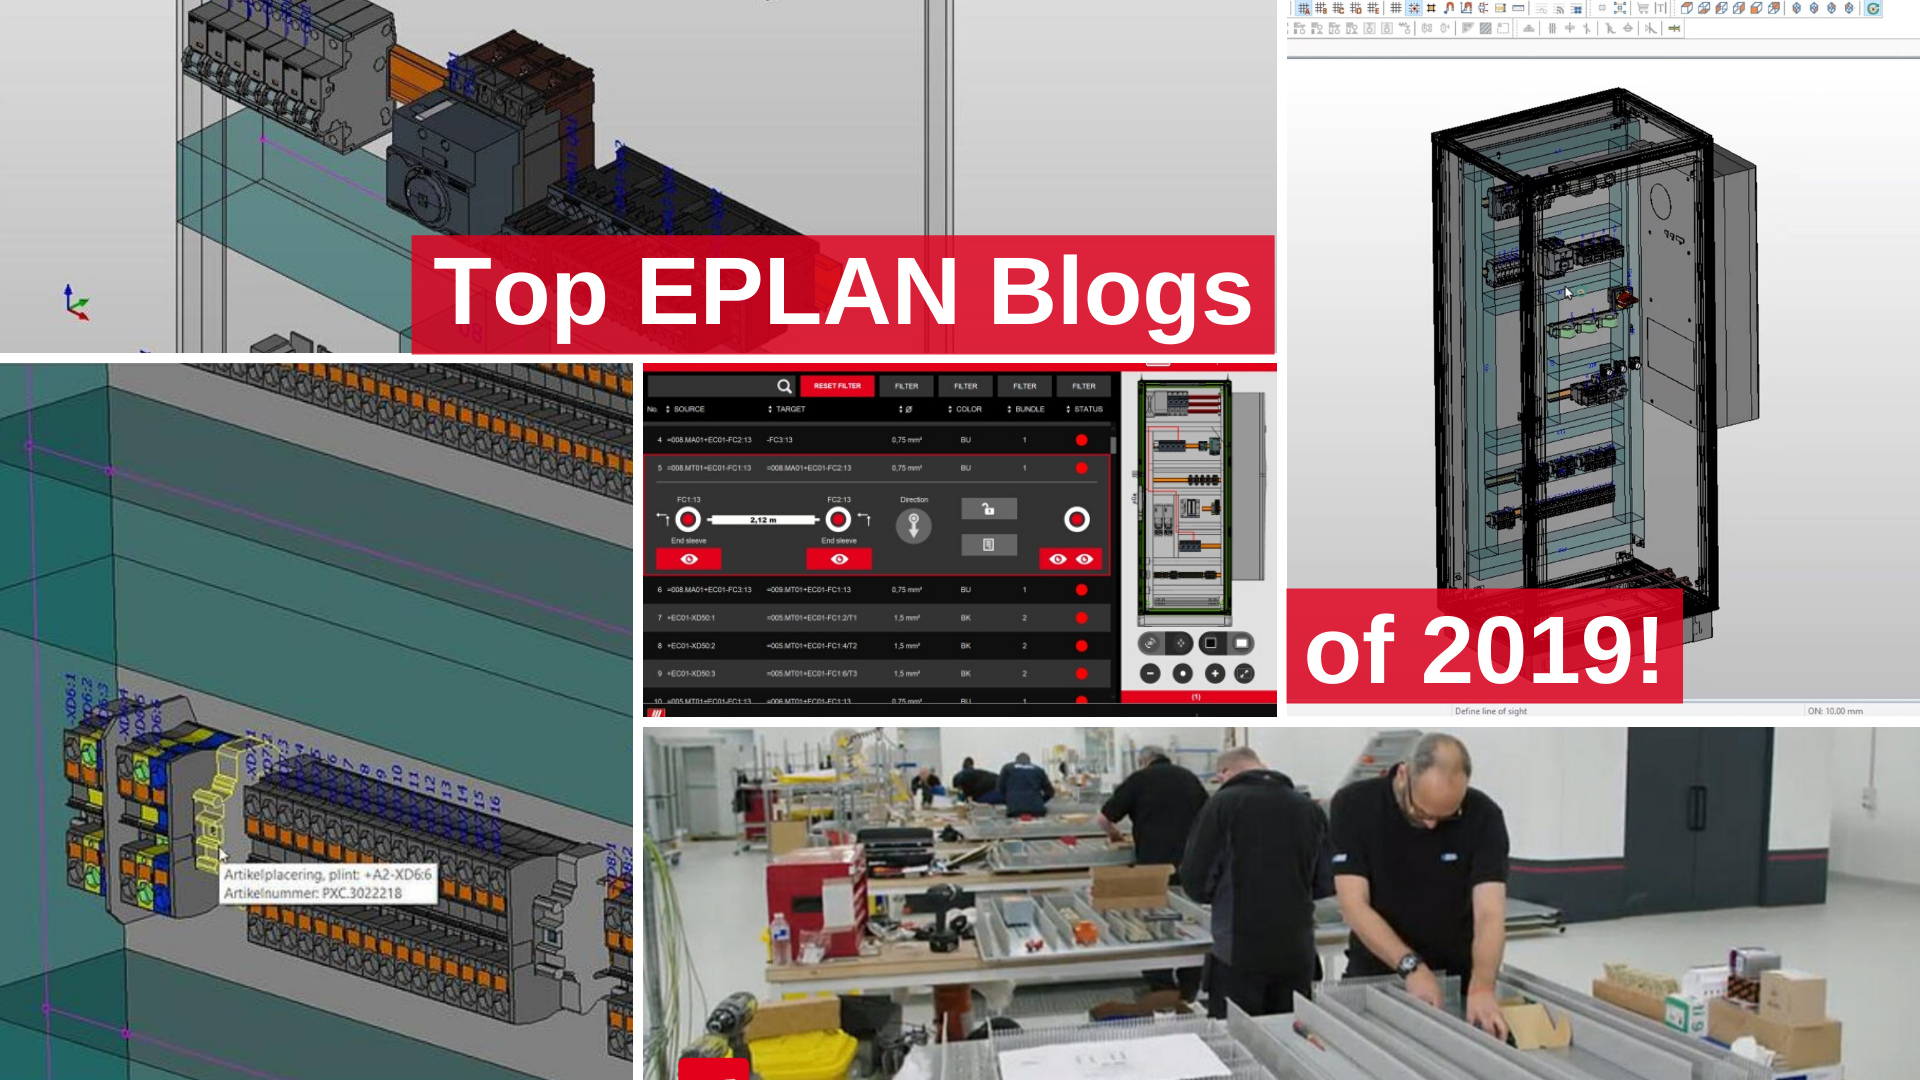 Top EPLAN blogs